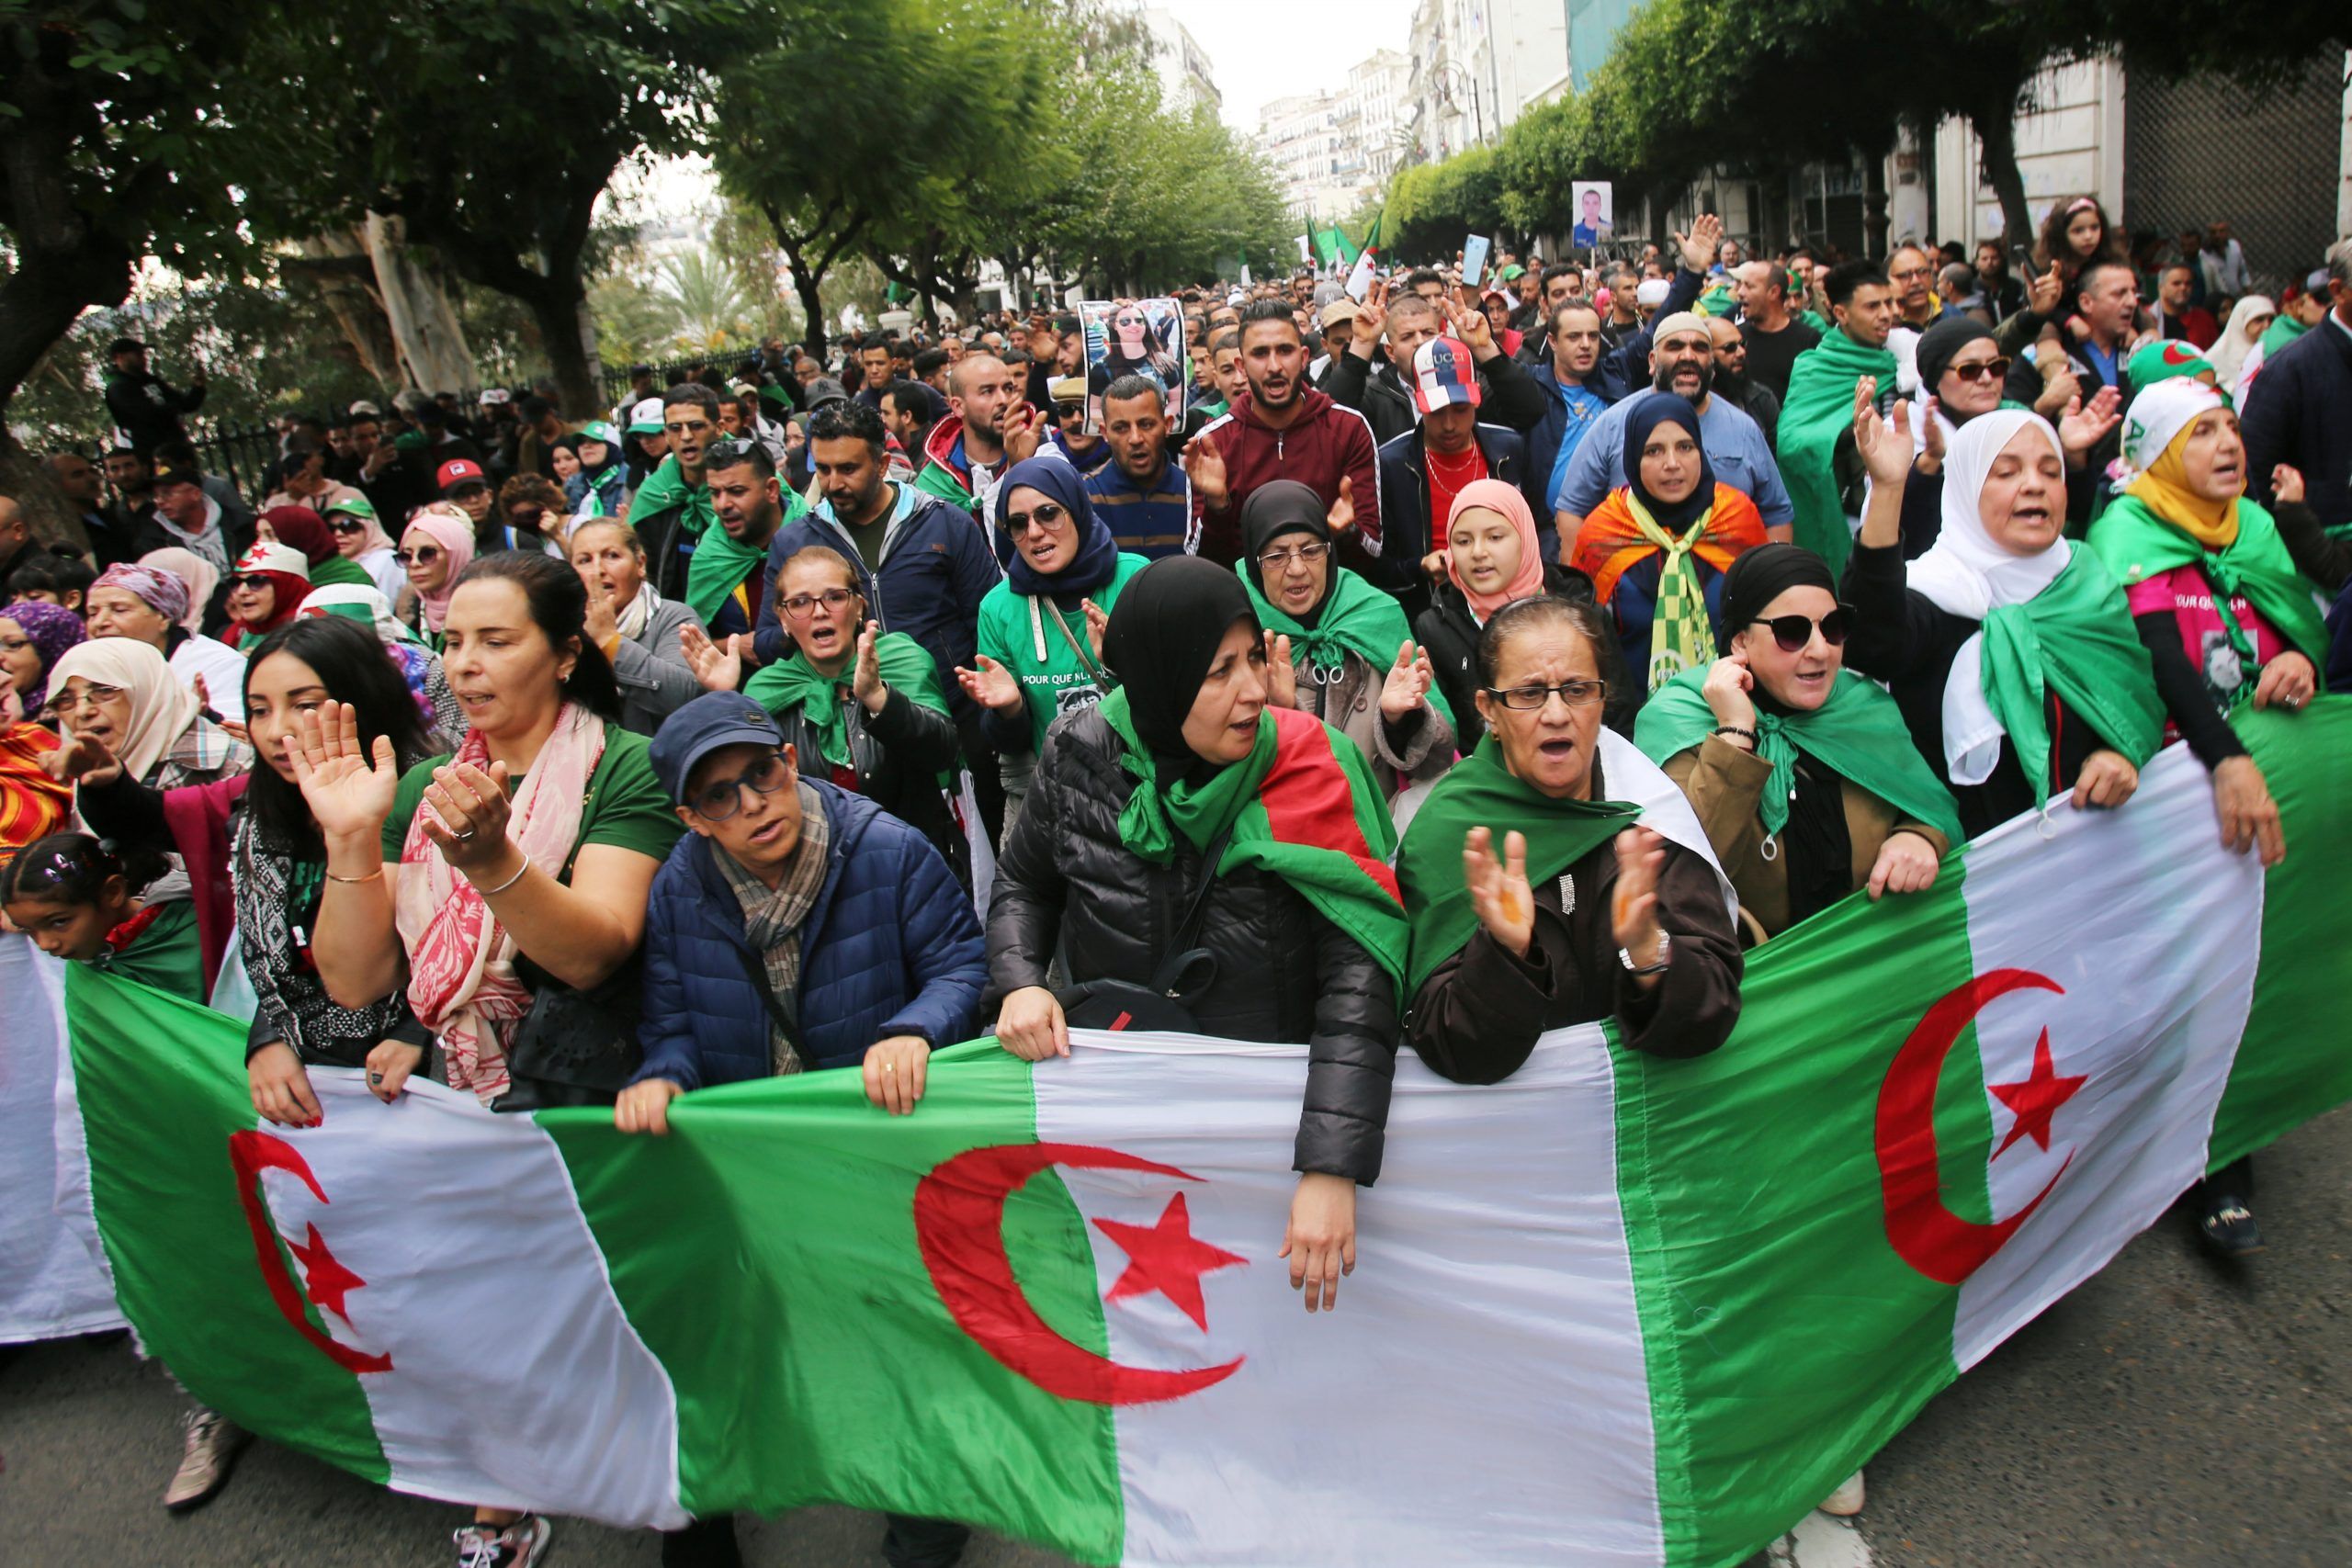 سياسيون: استمرار نفس النظام في الجزائر ترتب عنه تق